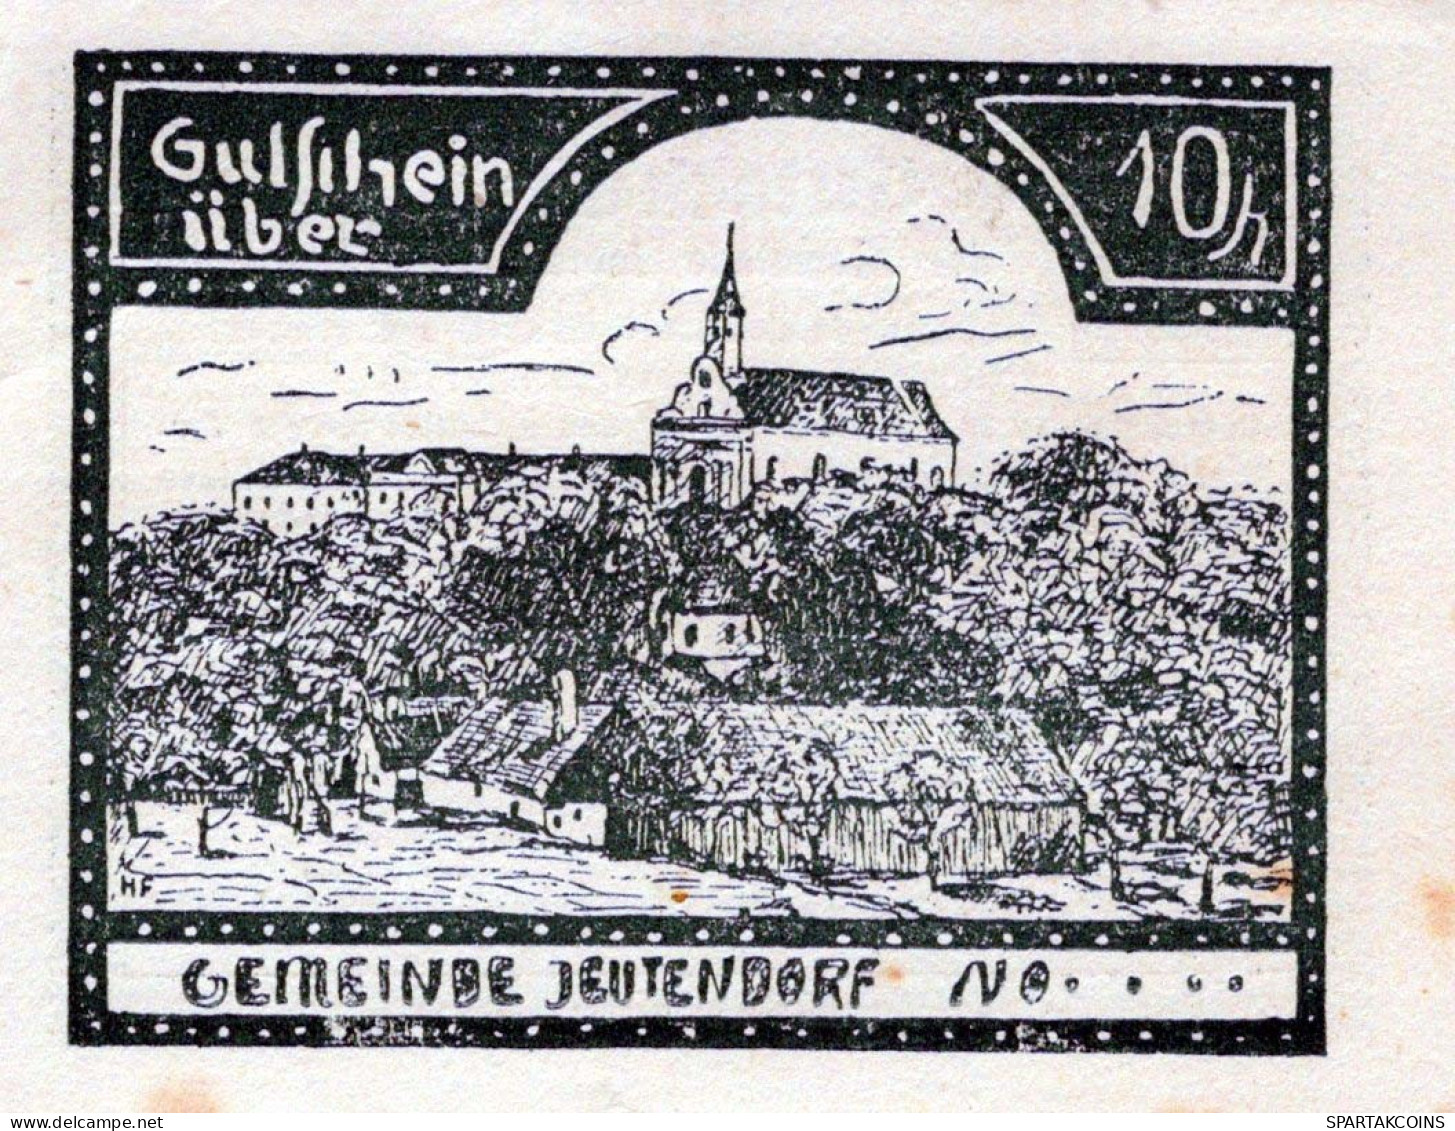 10 HELLER 1920 Stadt JEUTENDORF Niedrigeren Österreich Notgeld #PD634 - [11] Local Banknote Issues